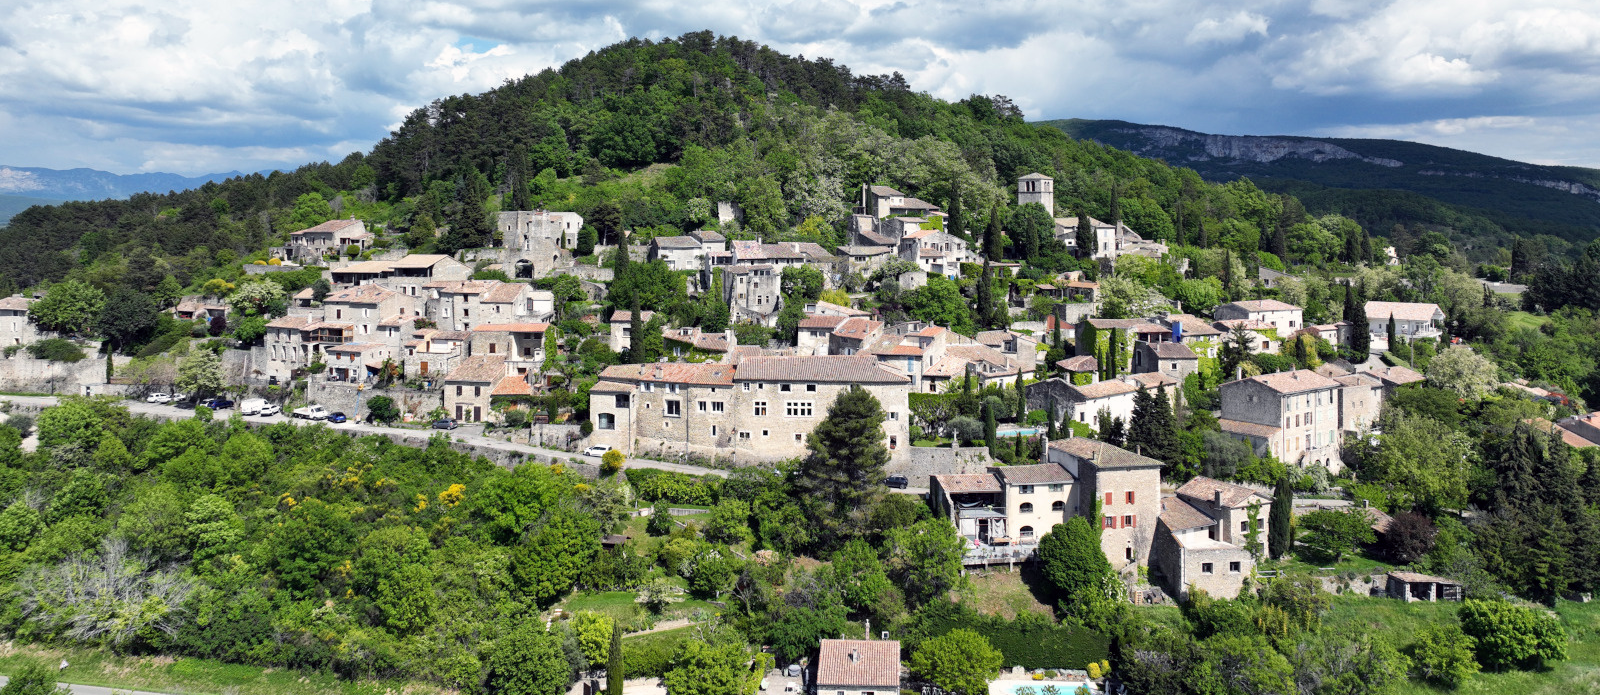 Deux nouvelles communes labellisées « Villes et villages fleuris »